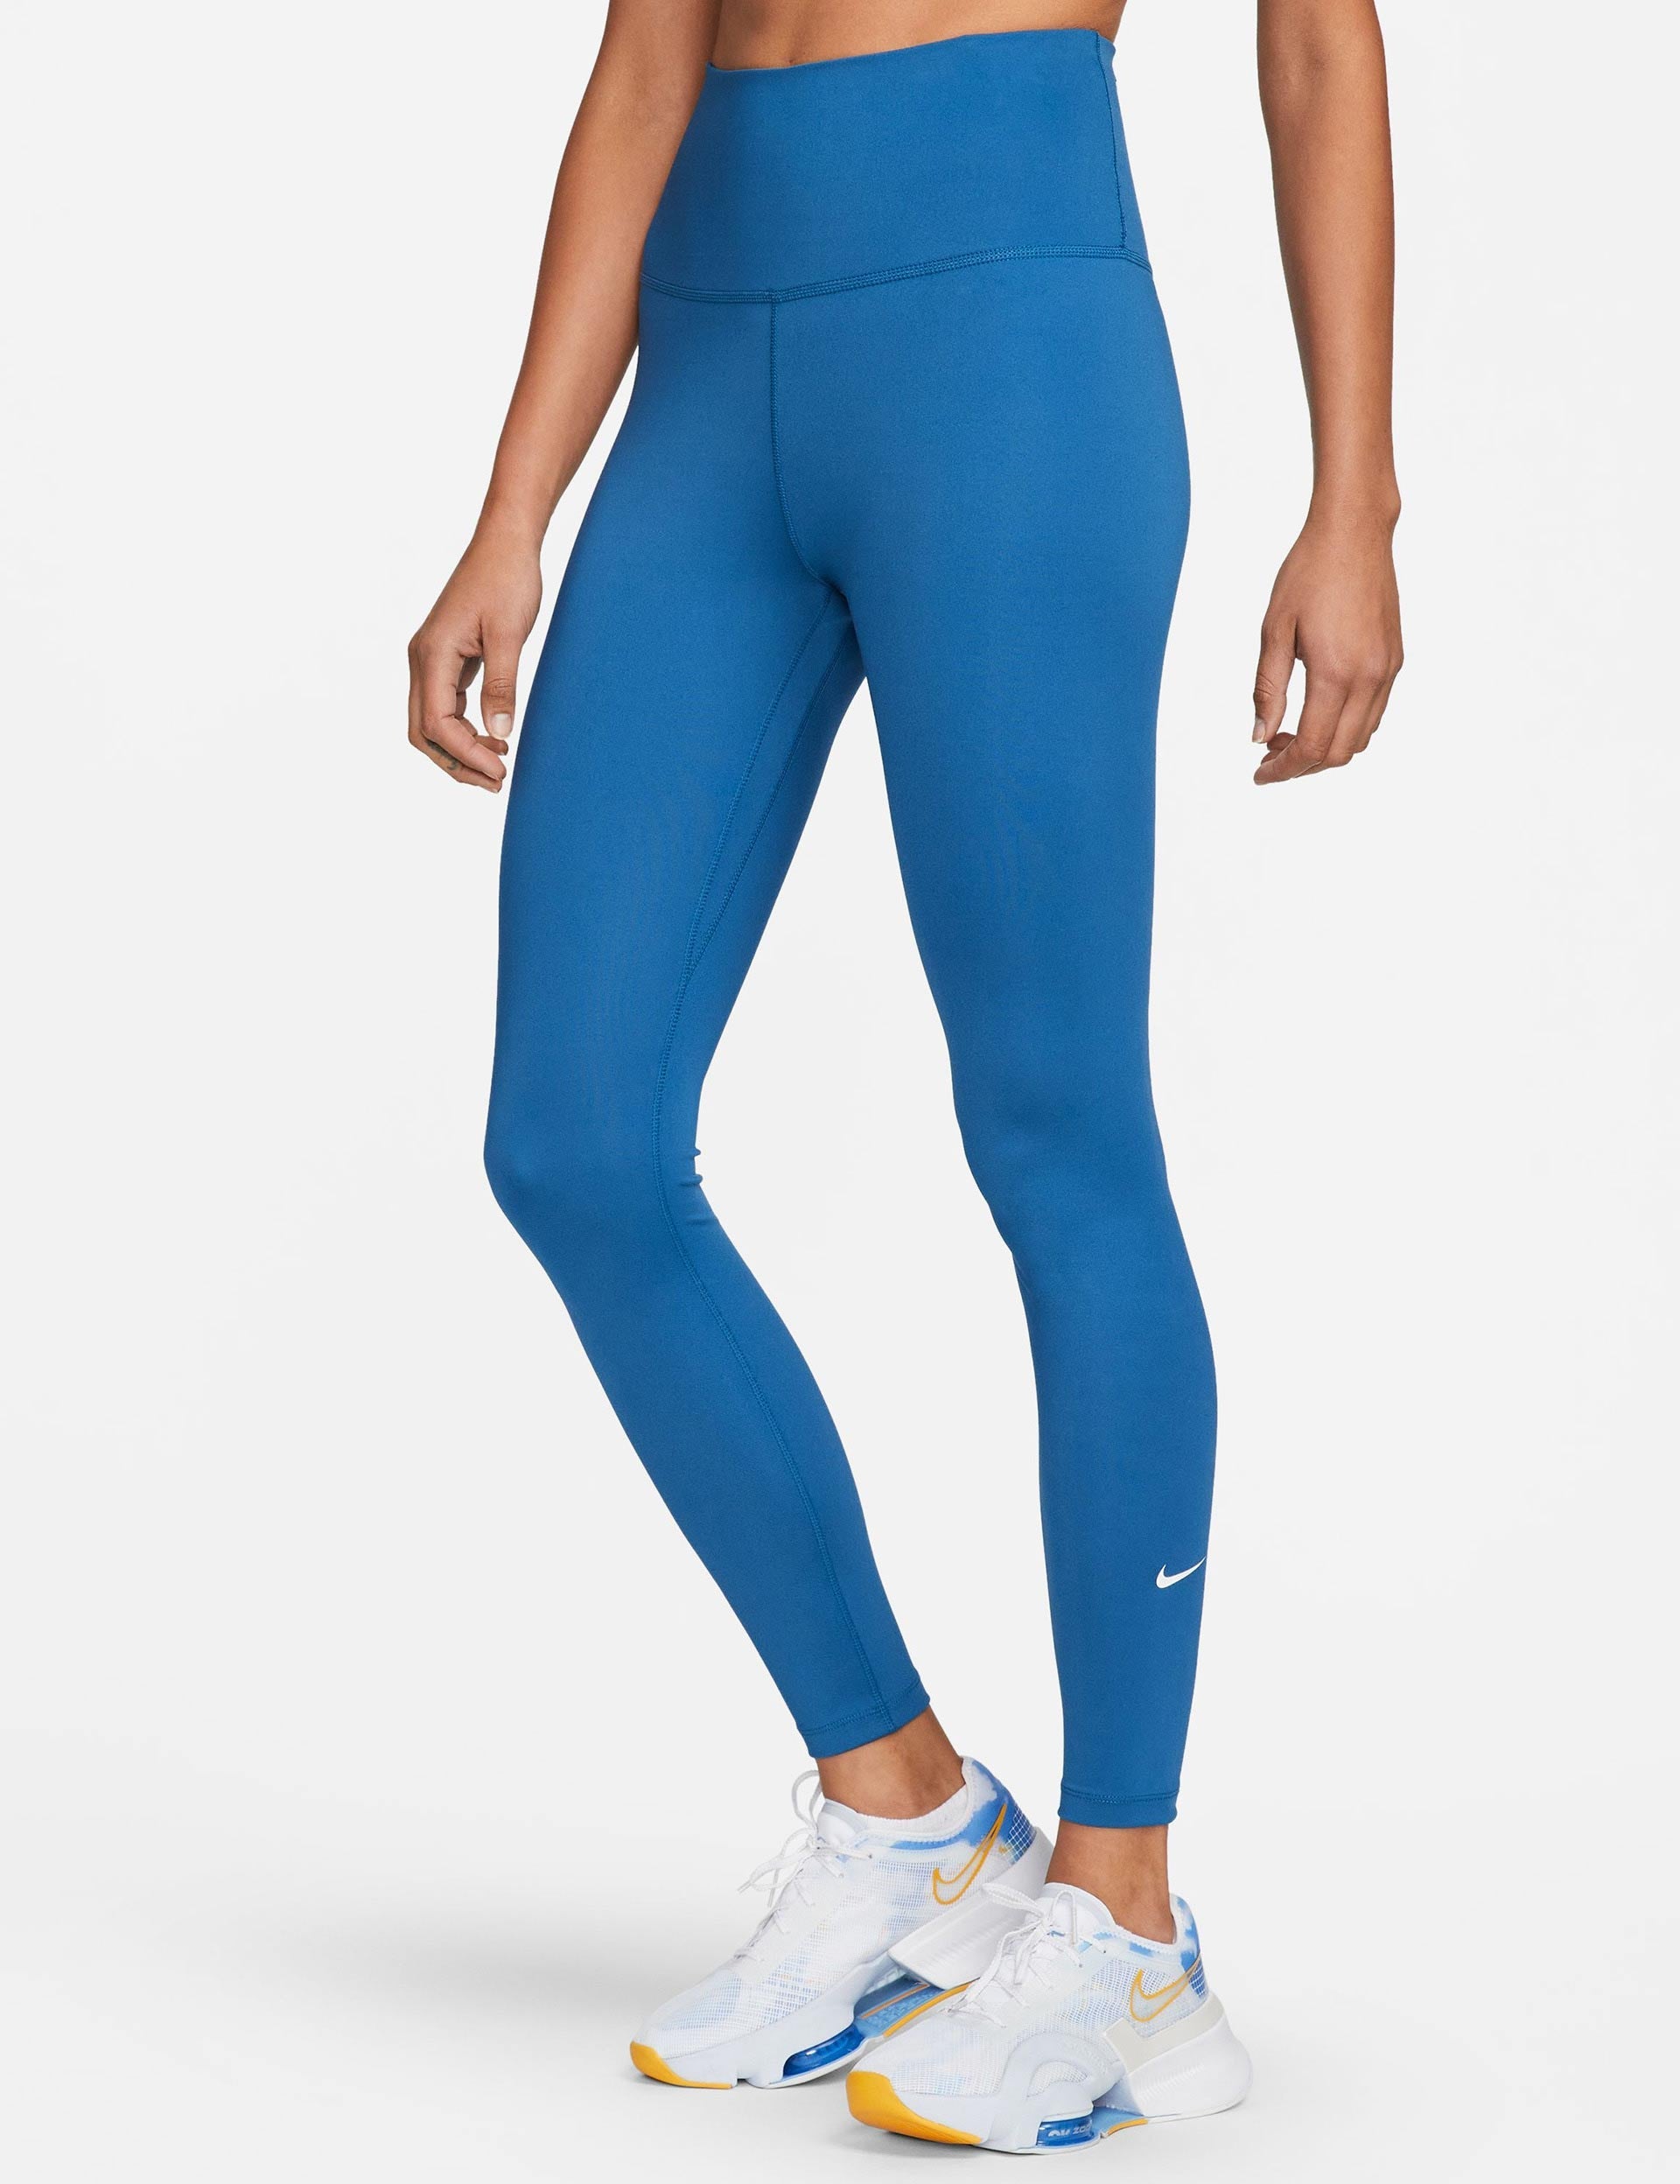 Nike Women's The One Legging - BLUE